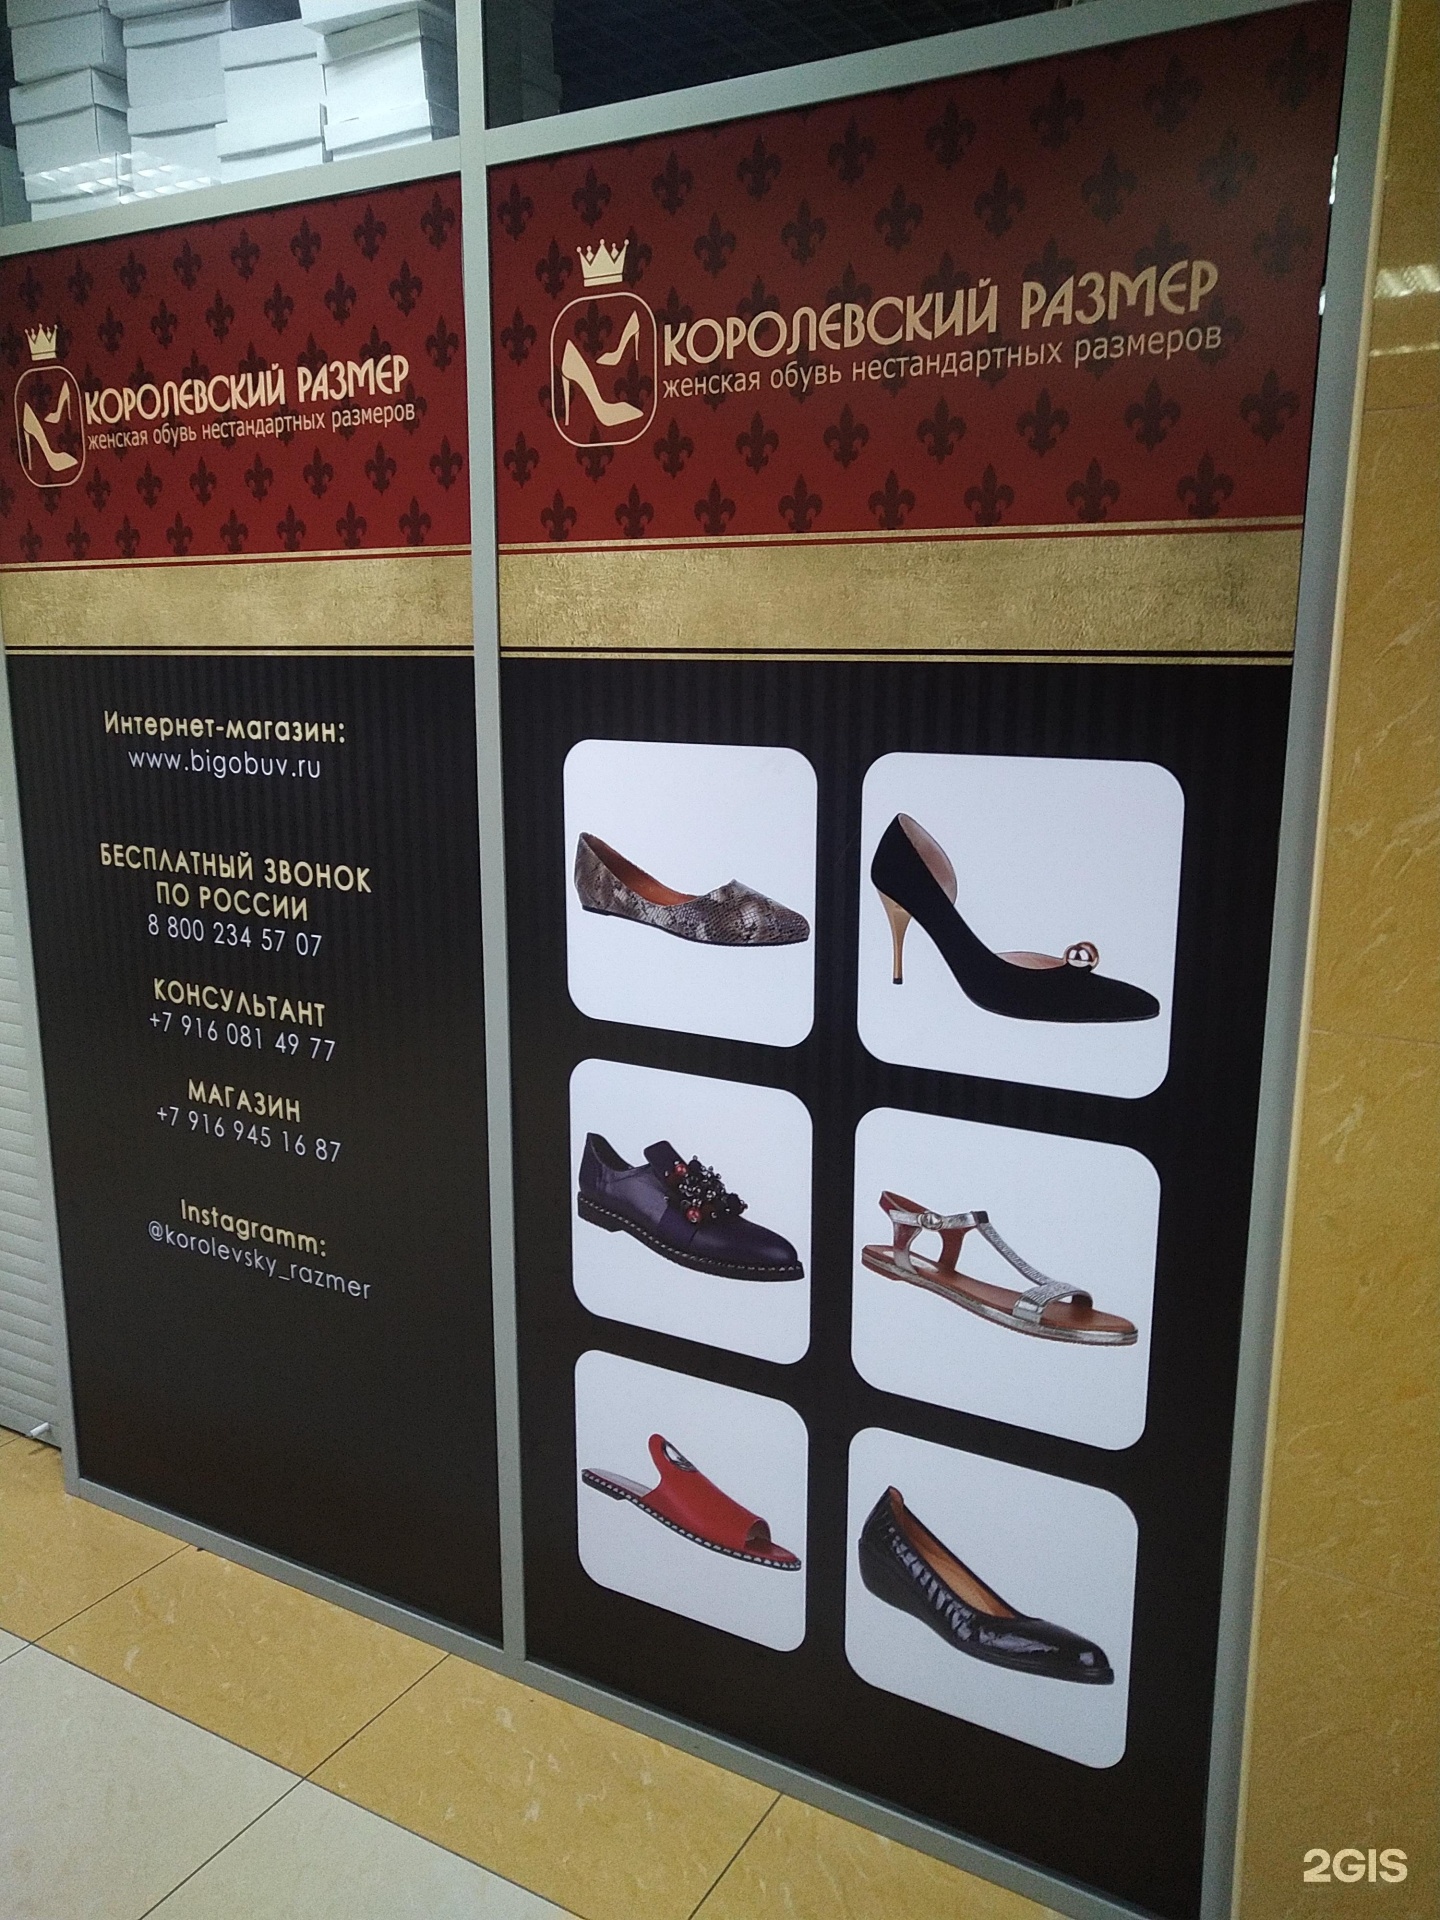 Королевский размер обувь больших размеров. Магазин нестандартной обуви. Магазин Королевский размер. Магазин нестандартных размеров обуви в СПБ. Обувь нестандартных размеров Москва.